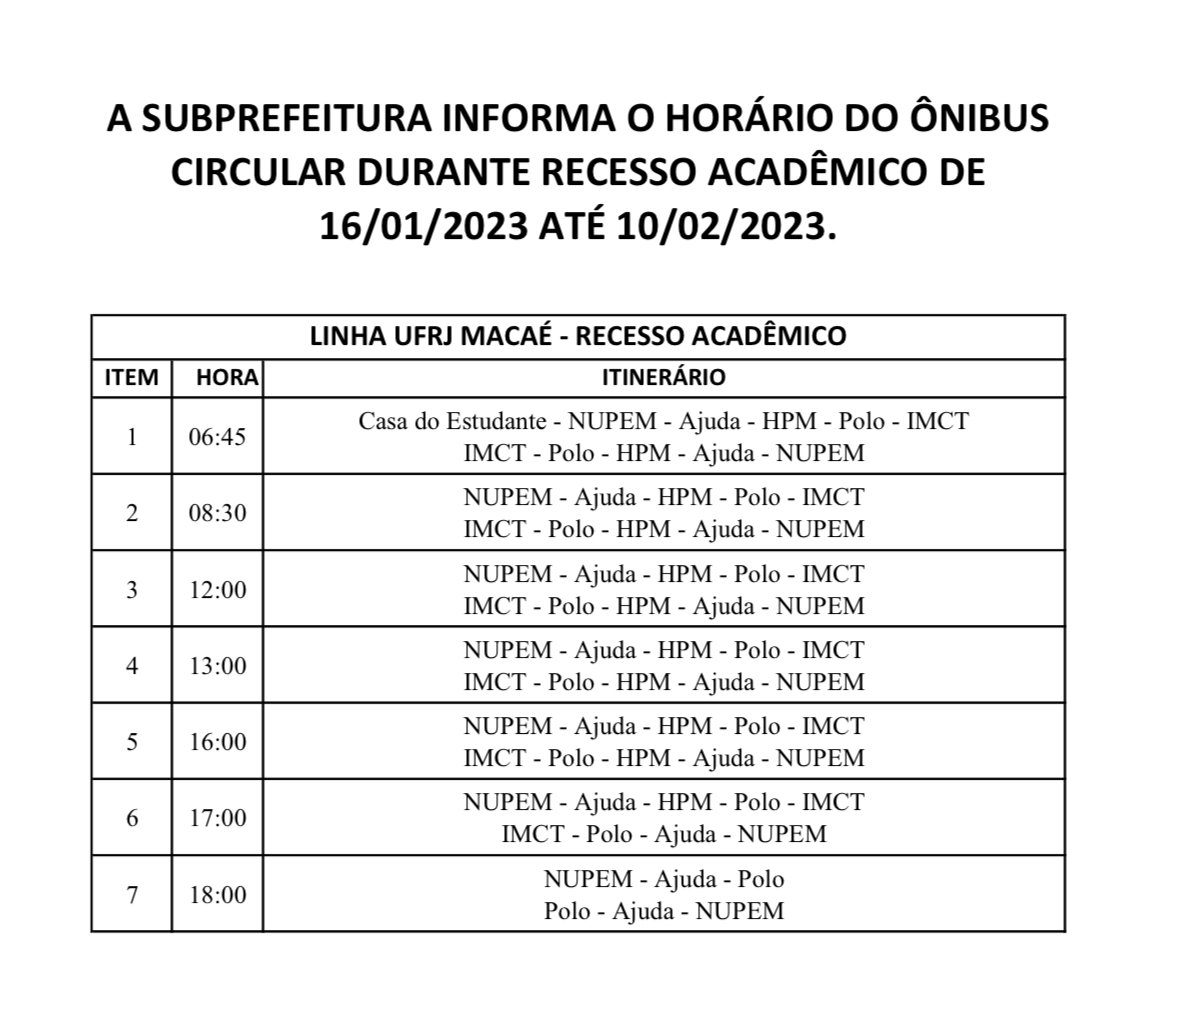 HORÁRIO DO ÔNIBUS CIRCULAR NO PERÍODO DE 16/01/2023 ATÉ 10/02/2023